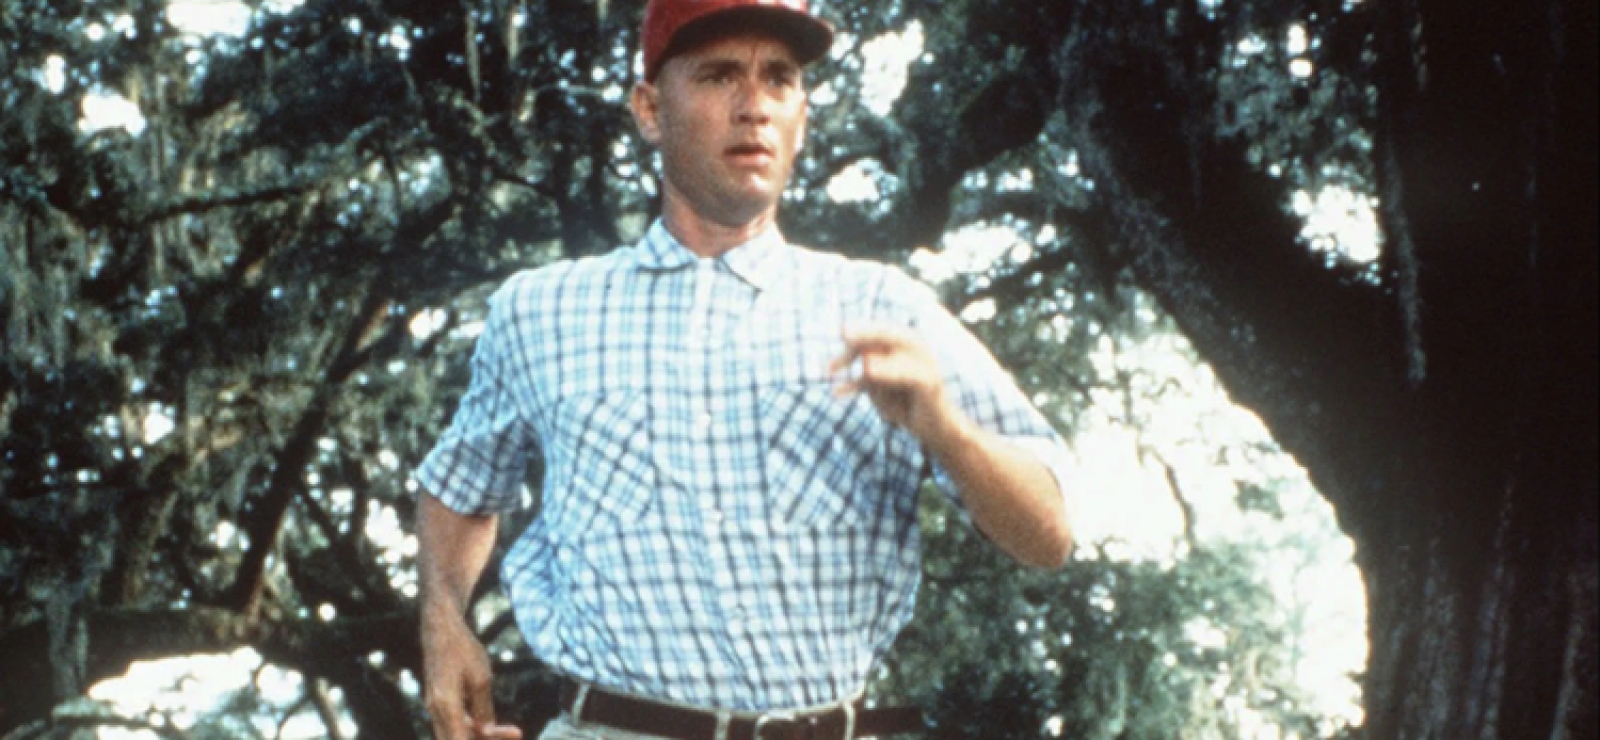 Le personnage de Forrest Gump, interprété à l'écran par Tom Hanks